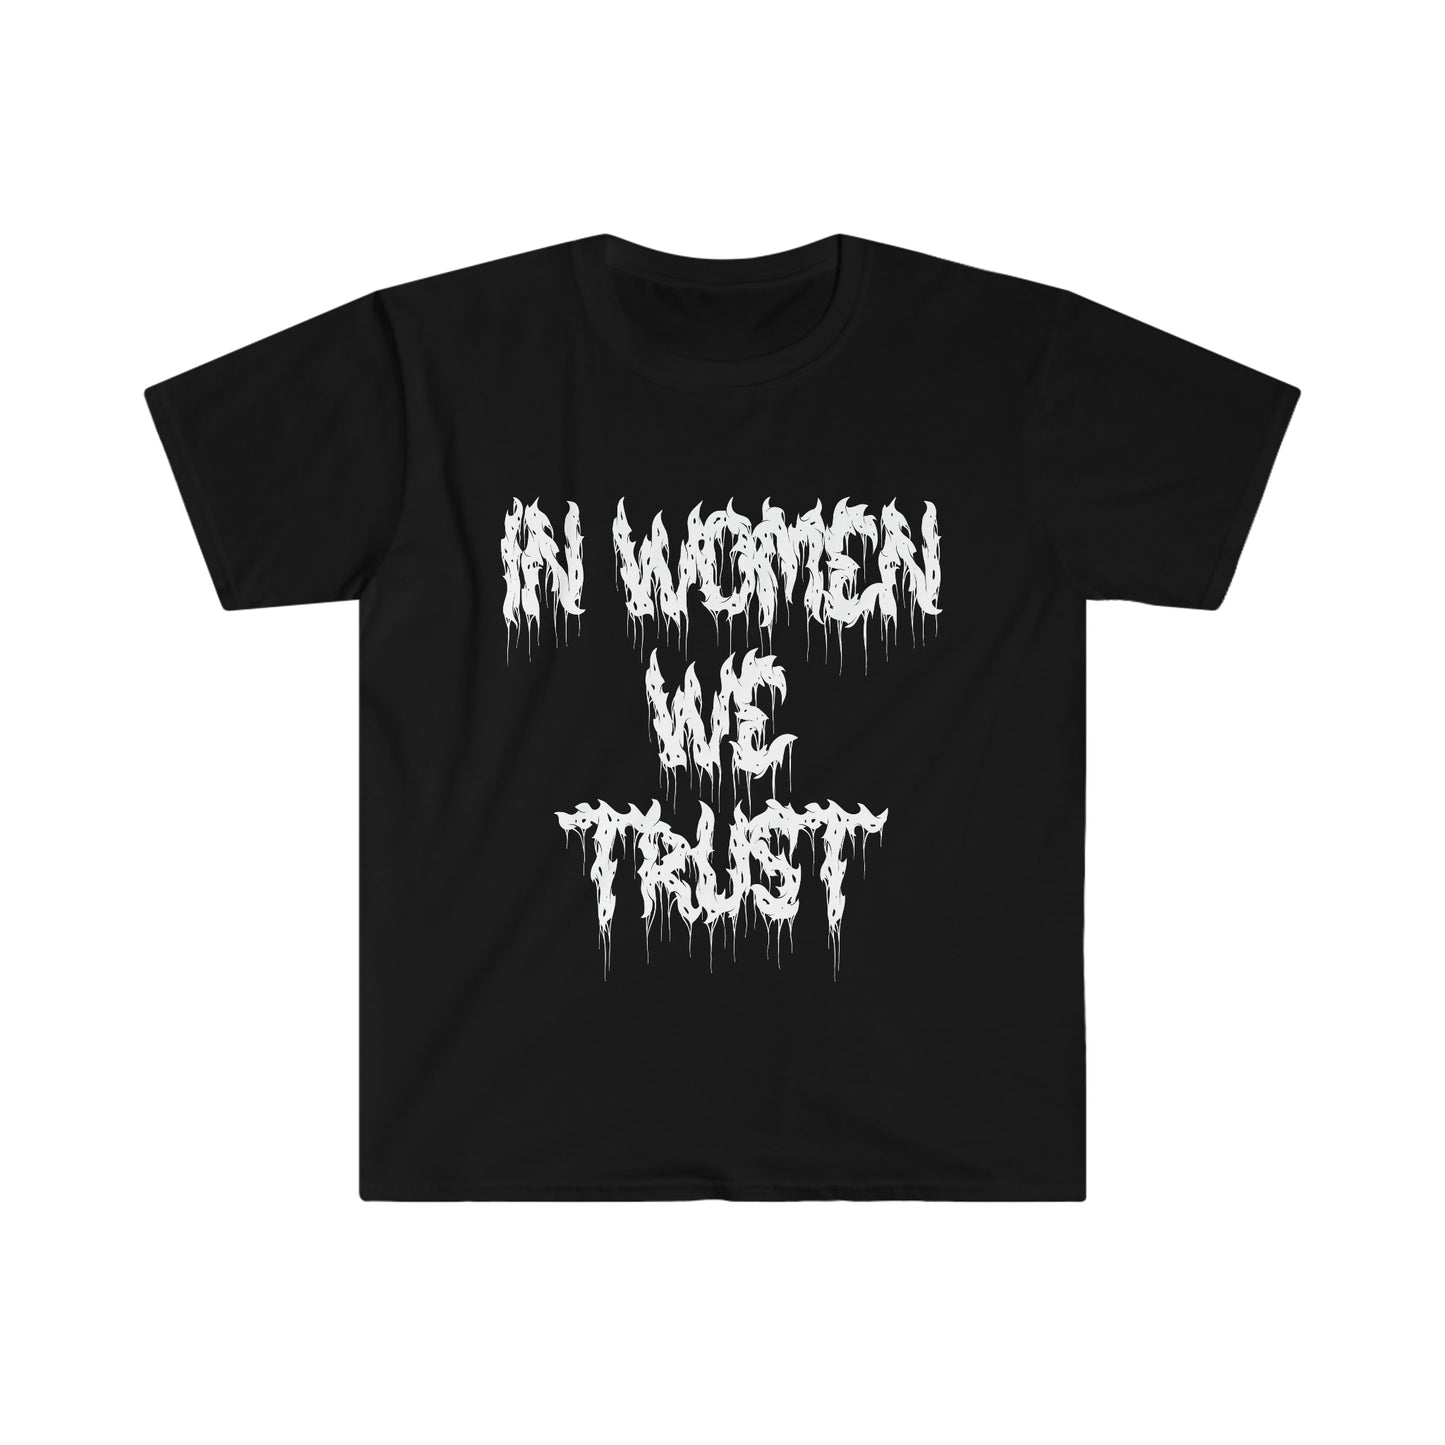 Goth Alternative Fashion Y2k In Women We Trust T-Shirt